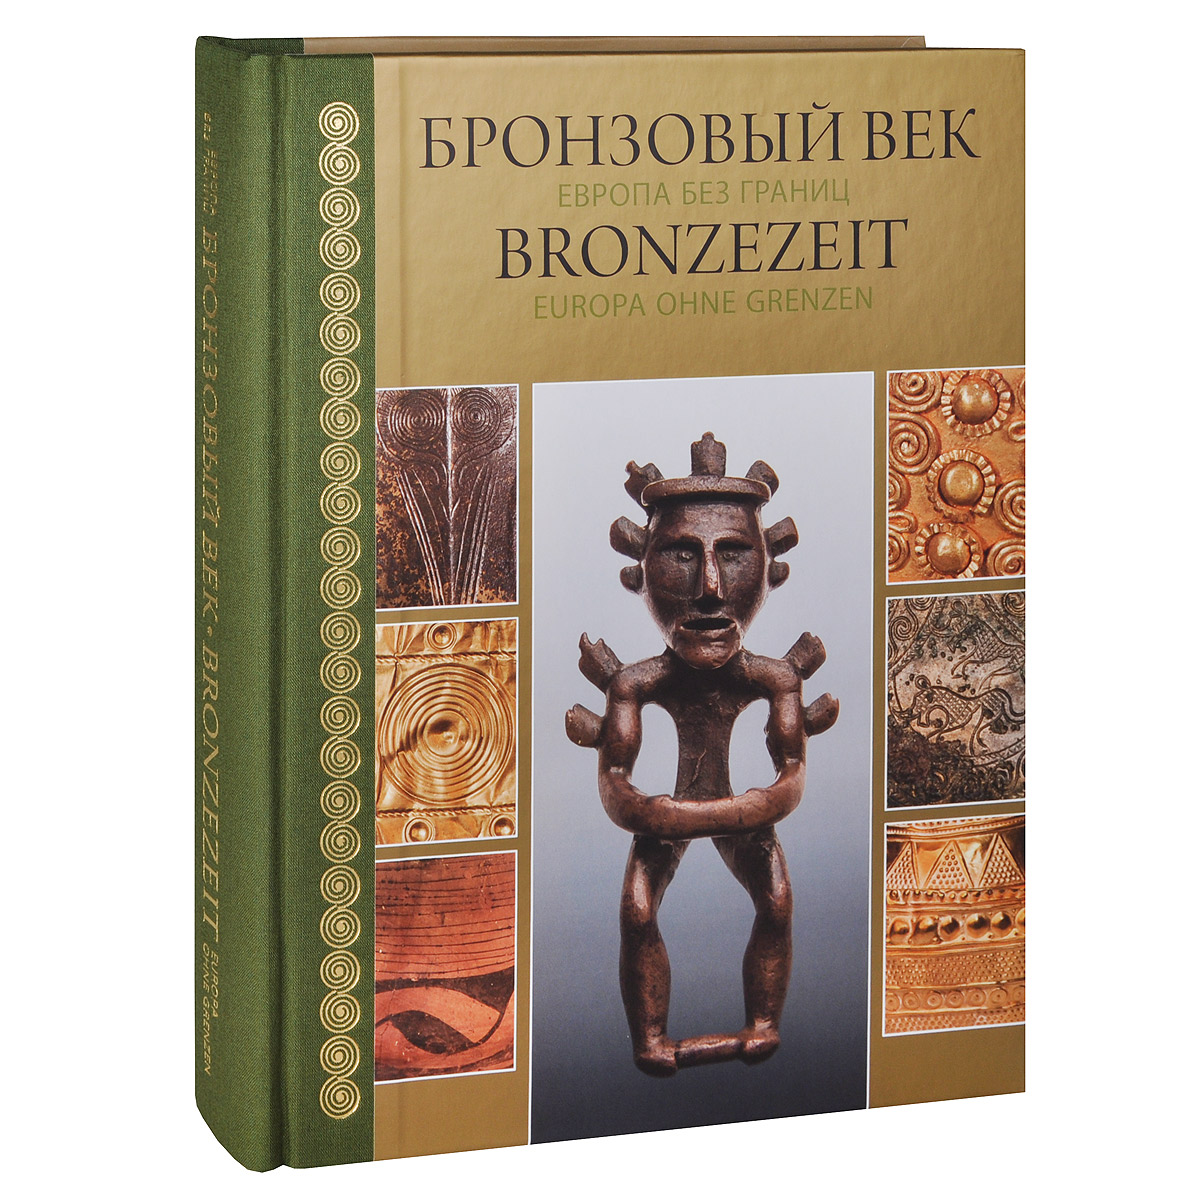 Рецензии на книгу Бронзовый век. Европа без границ / Bronzezeit: Europa ohne Grenzen